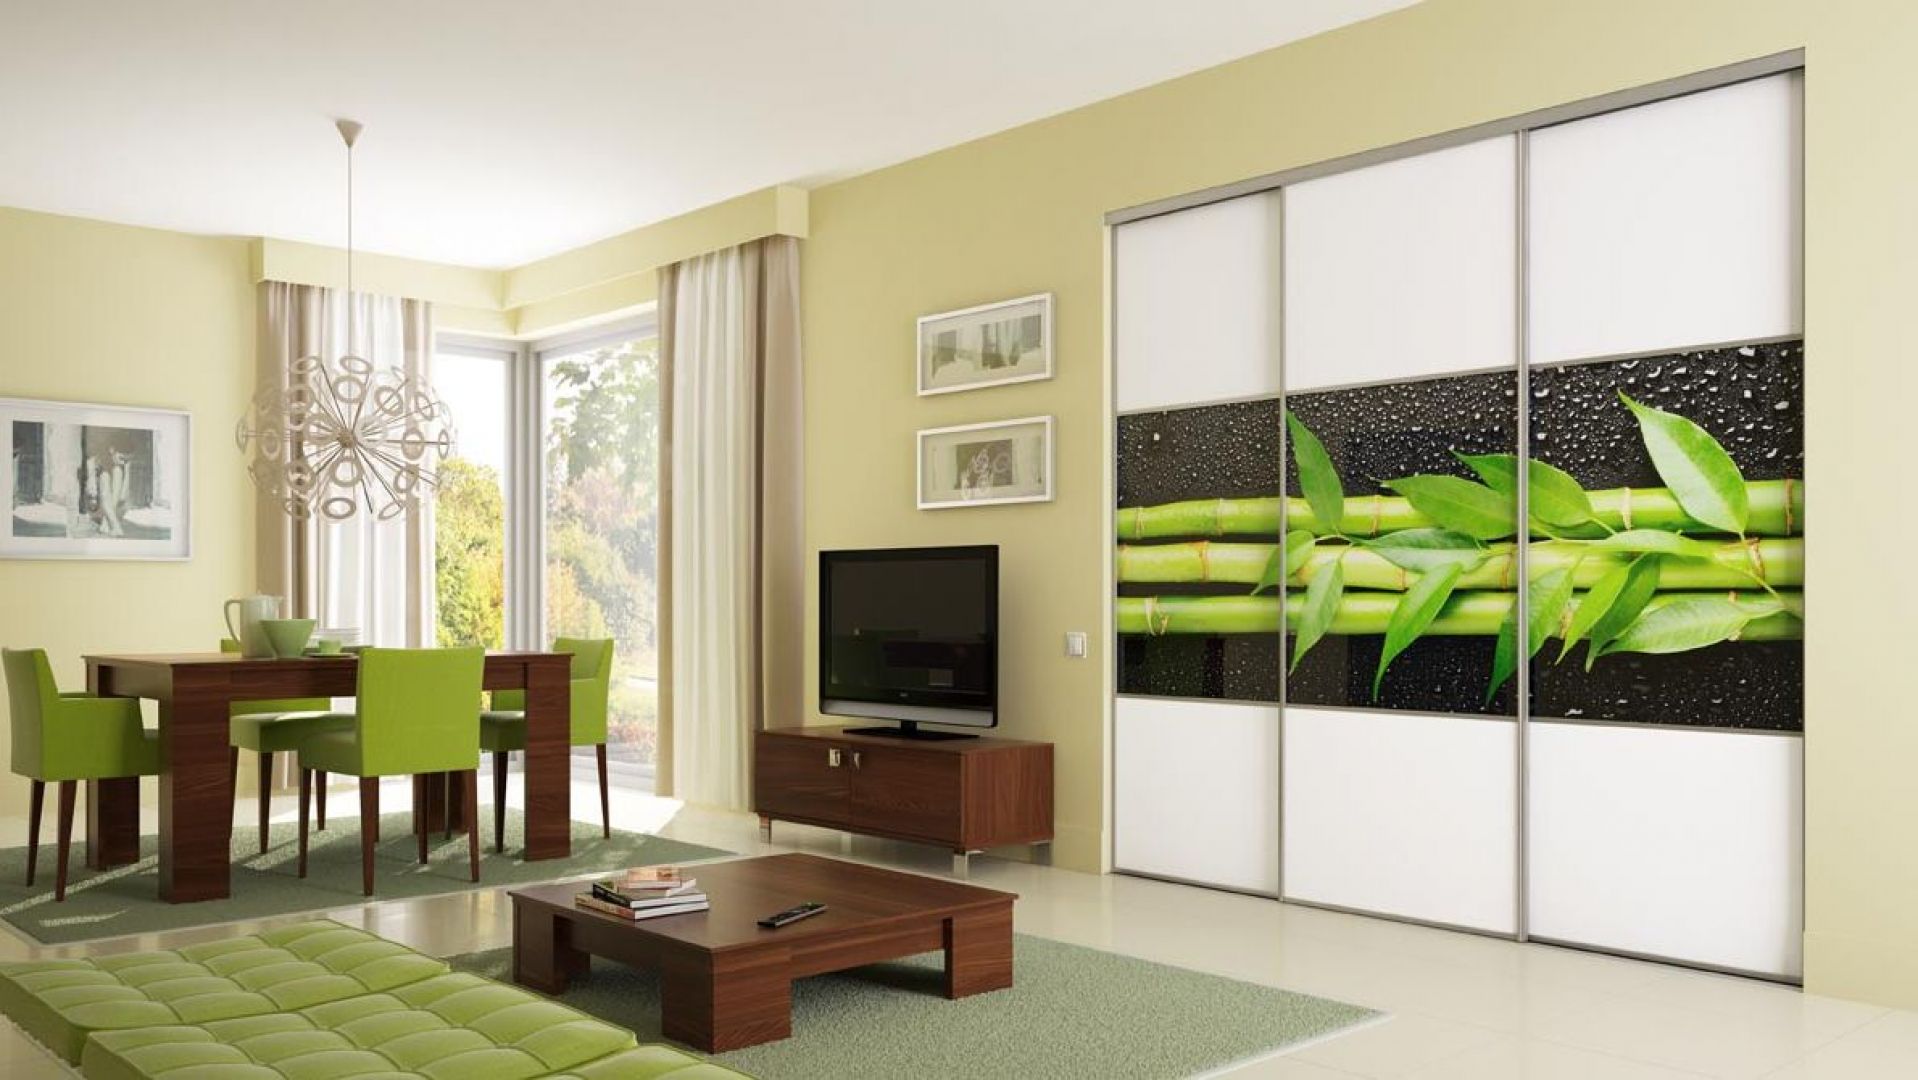 Graficzny motyw bambusa na drzwiach szafy stanowi mocny element dekoracyjny salonu. Fot. Komandor 